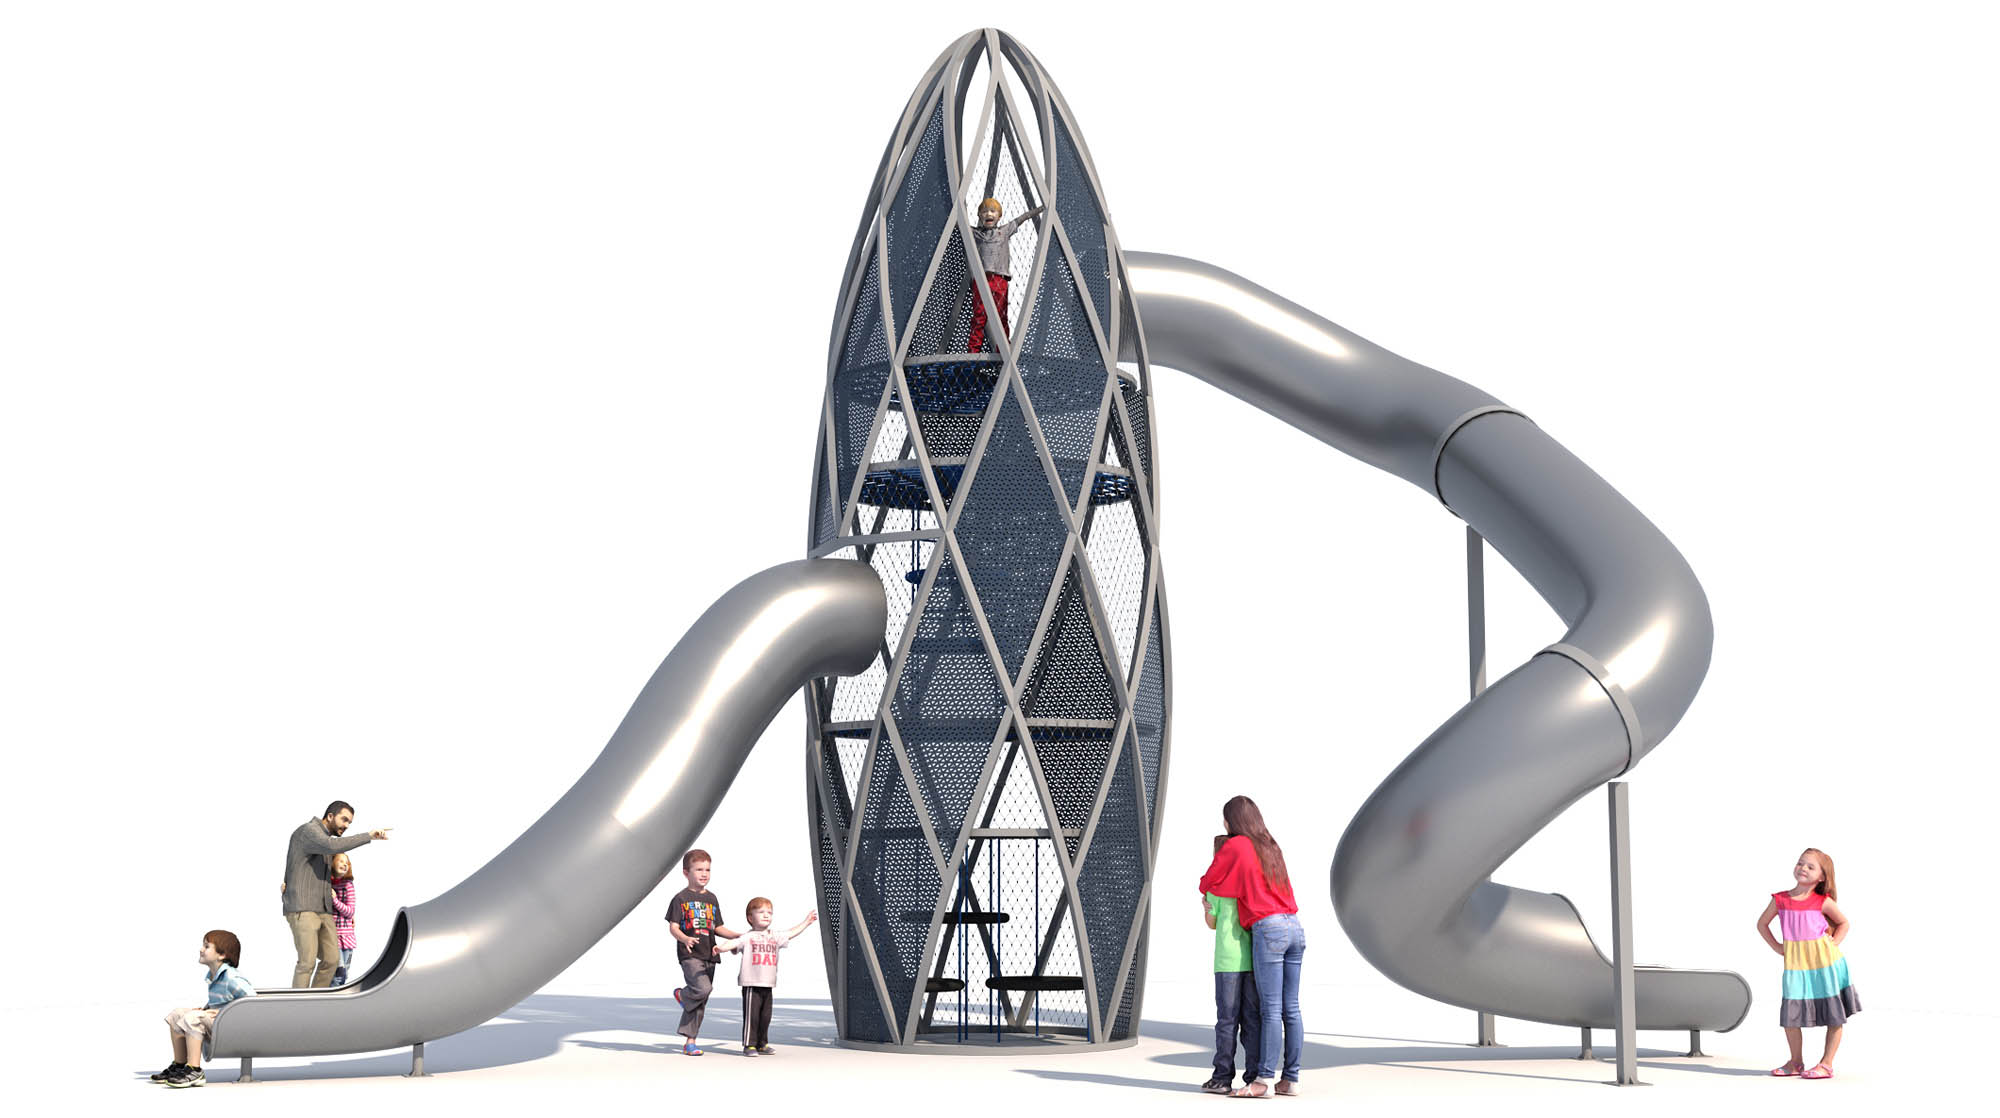 Новые Горизонты, Игровой комплекс "Башня-огурец" - прообразом является Башня Нормана Фостера